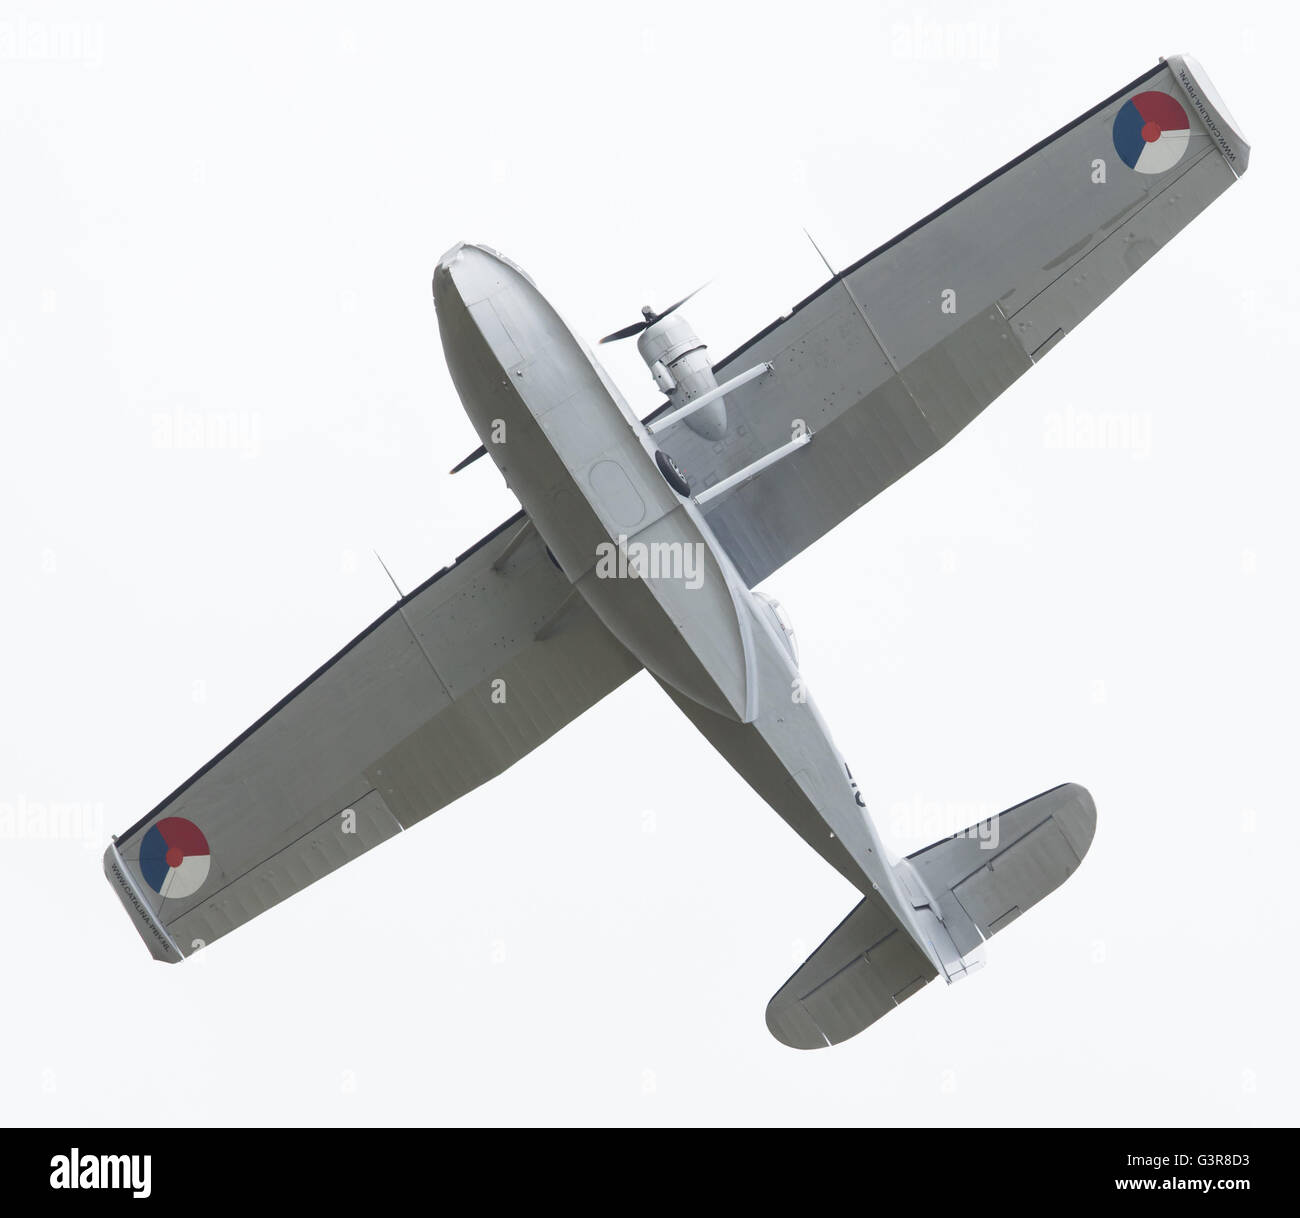 LEEUWARDEN, Paesi Bassi - 10 giugno: Consolidamento costruttiva PBY Catalina nella marina olandese colori battenti presso il Royal Netherlands Air Force giorni Foto Stock